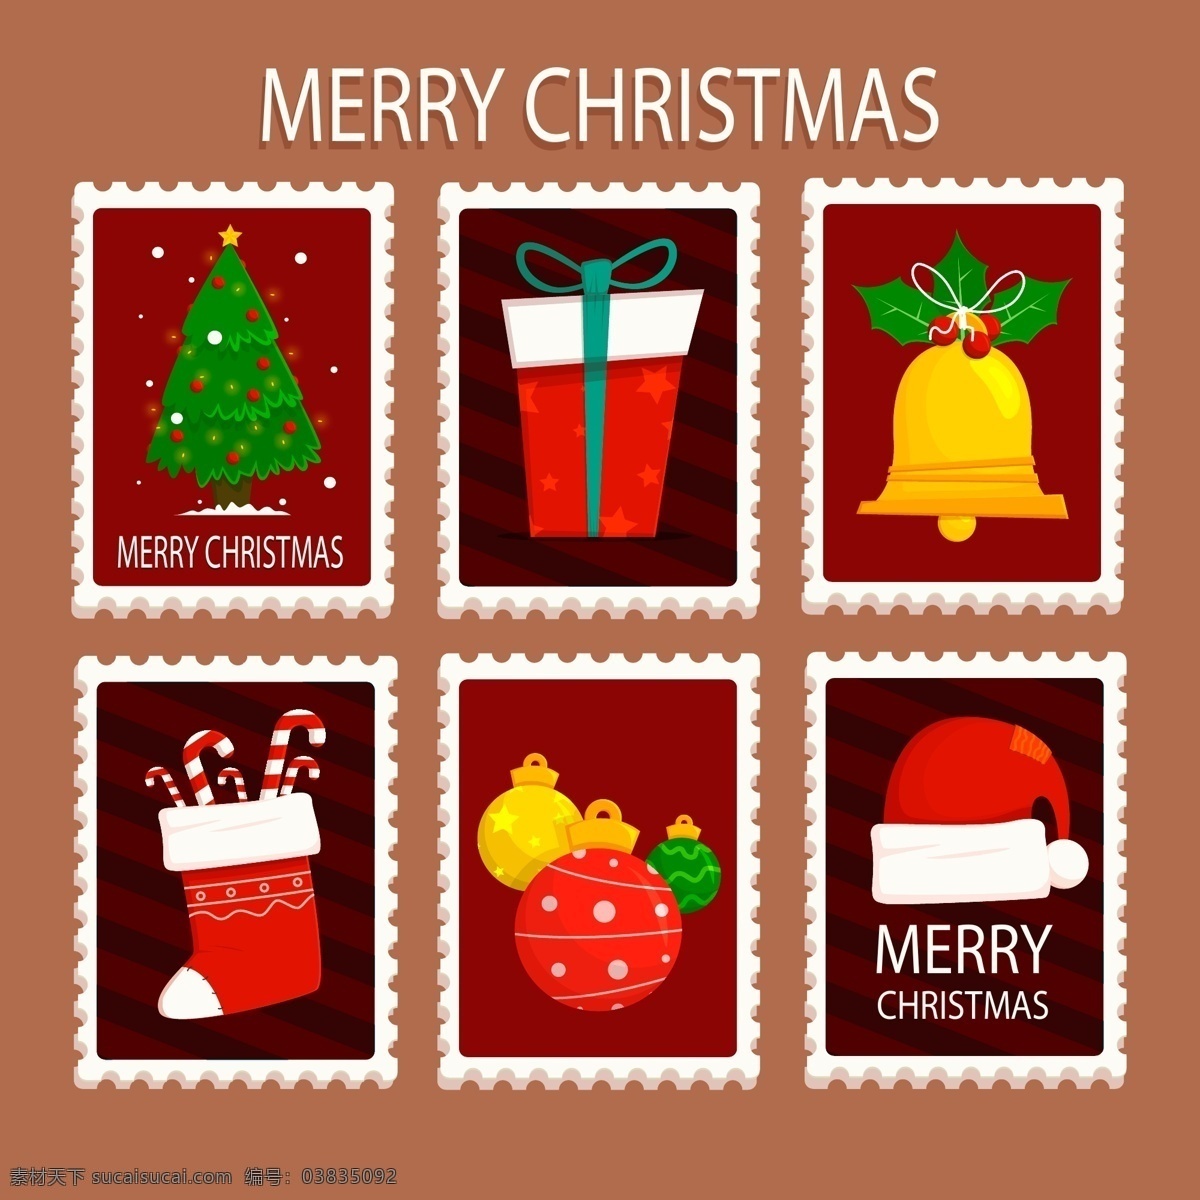 彩色 图案 圣诞节 邮票 标签 圣诞树 礼物 矢量素材 圣诞袜 糖果 铃铛 圣诞帽 英文